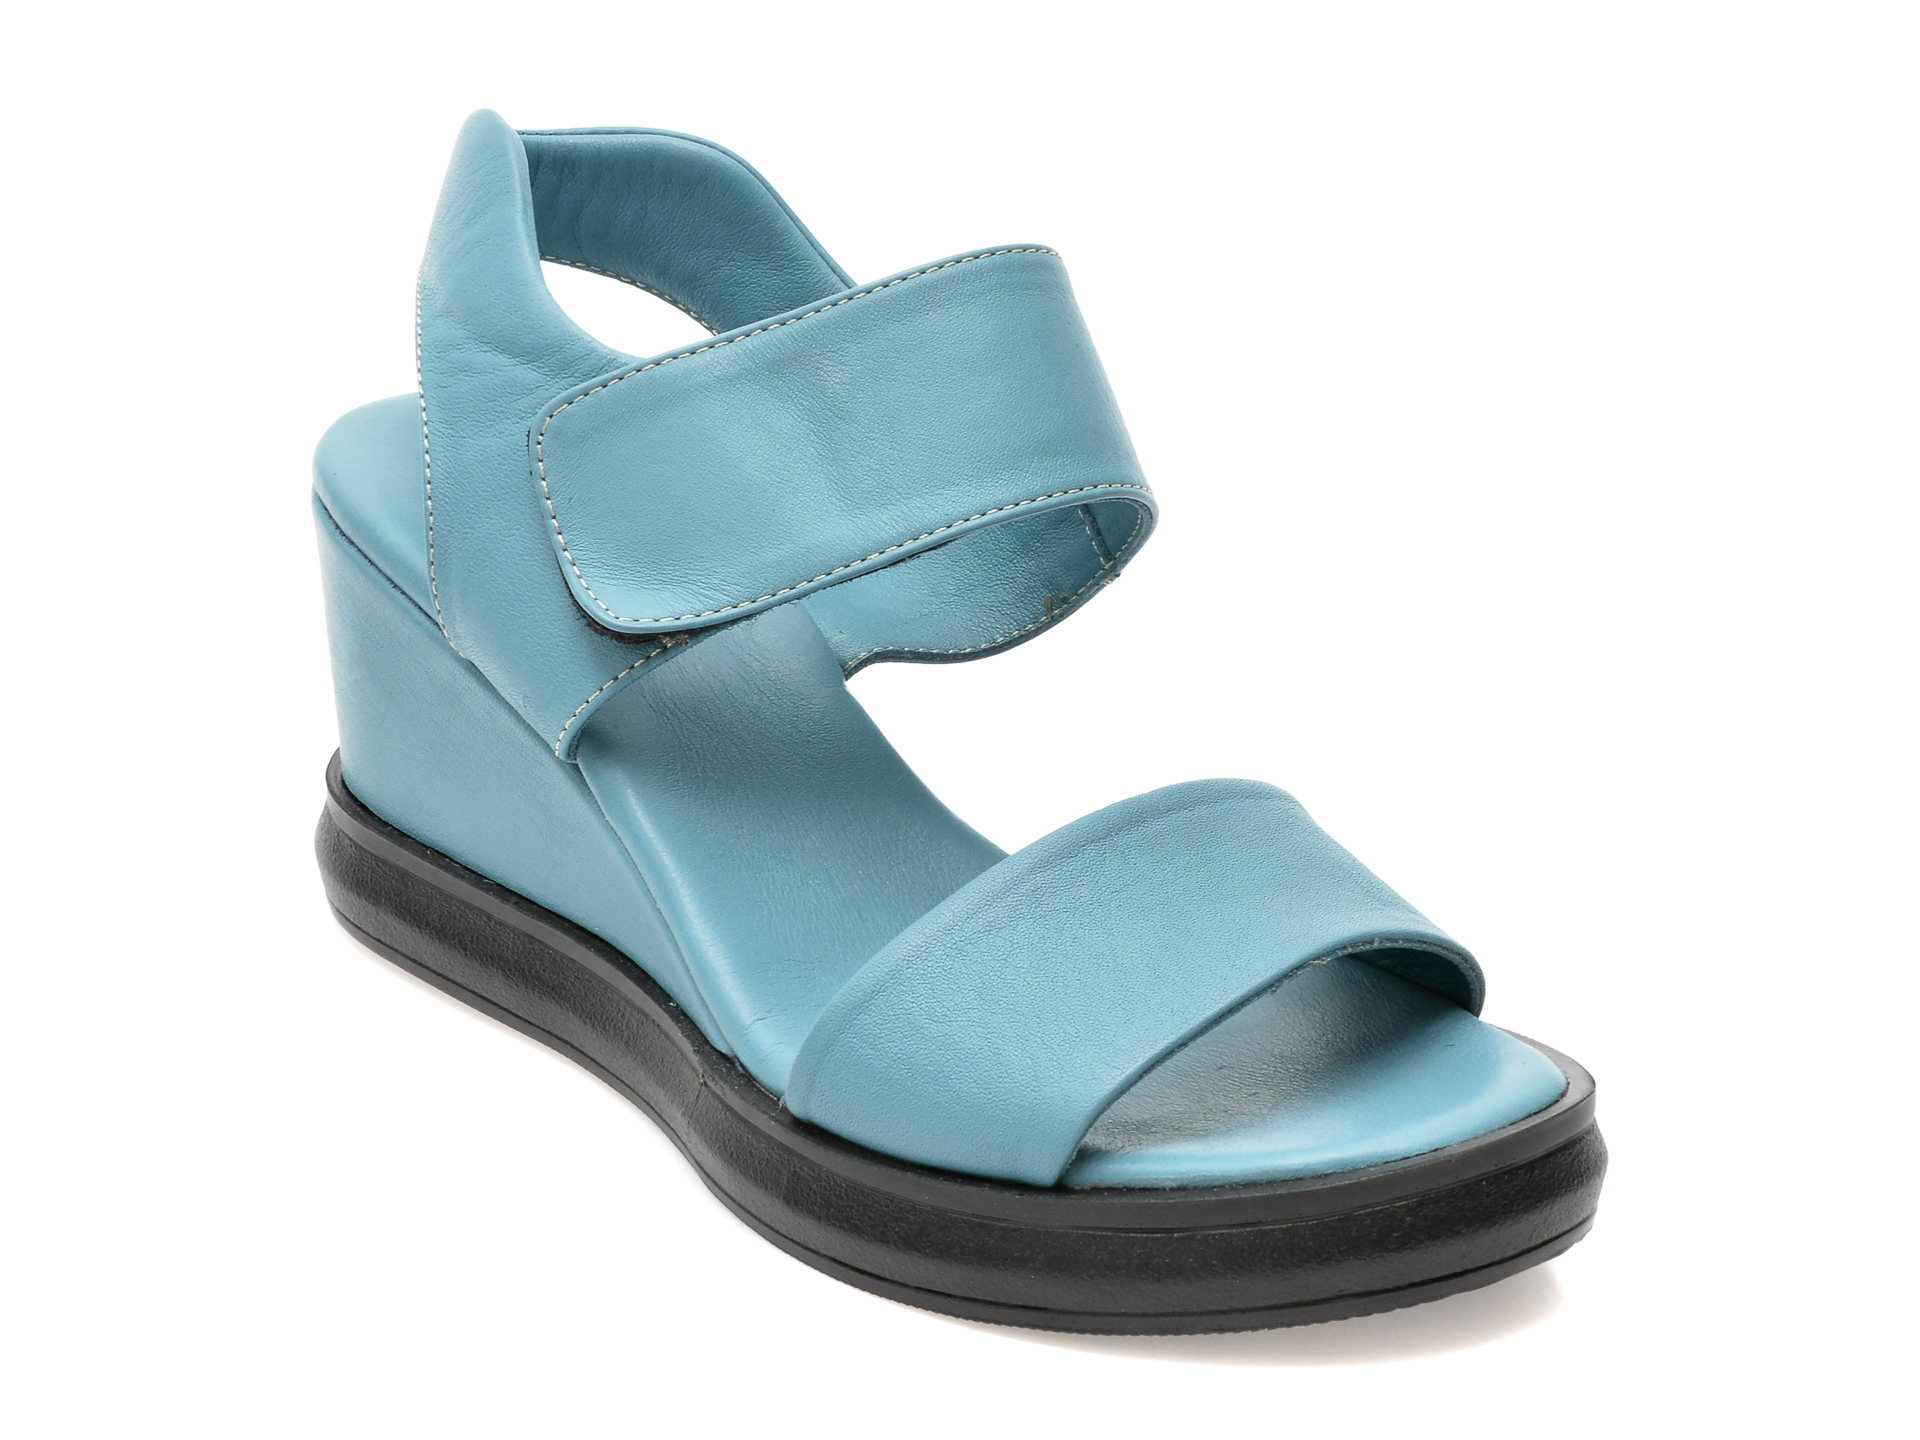 Sandale EBOUV albastre, 30021, din piele naturala /femei/sandale imagine noua